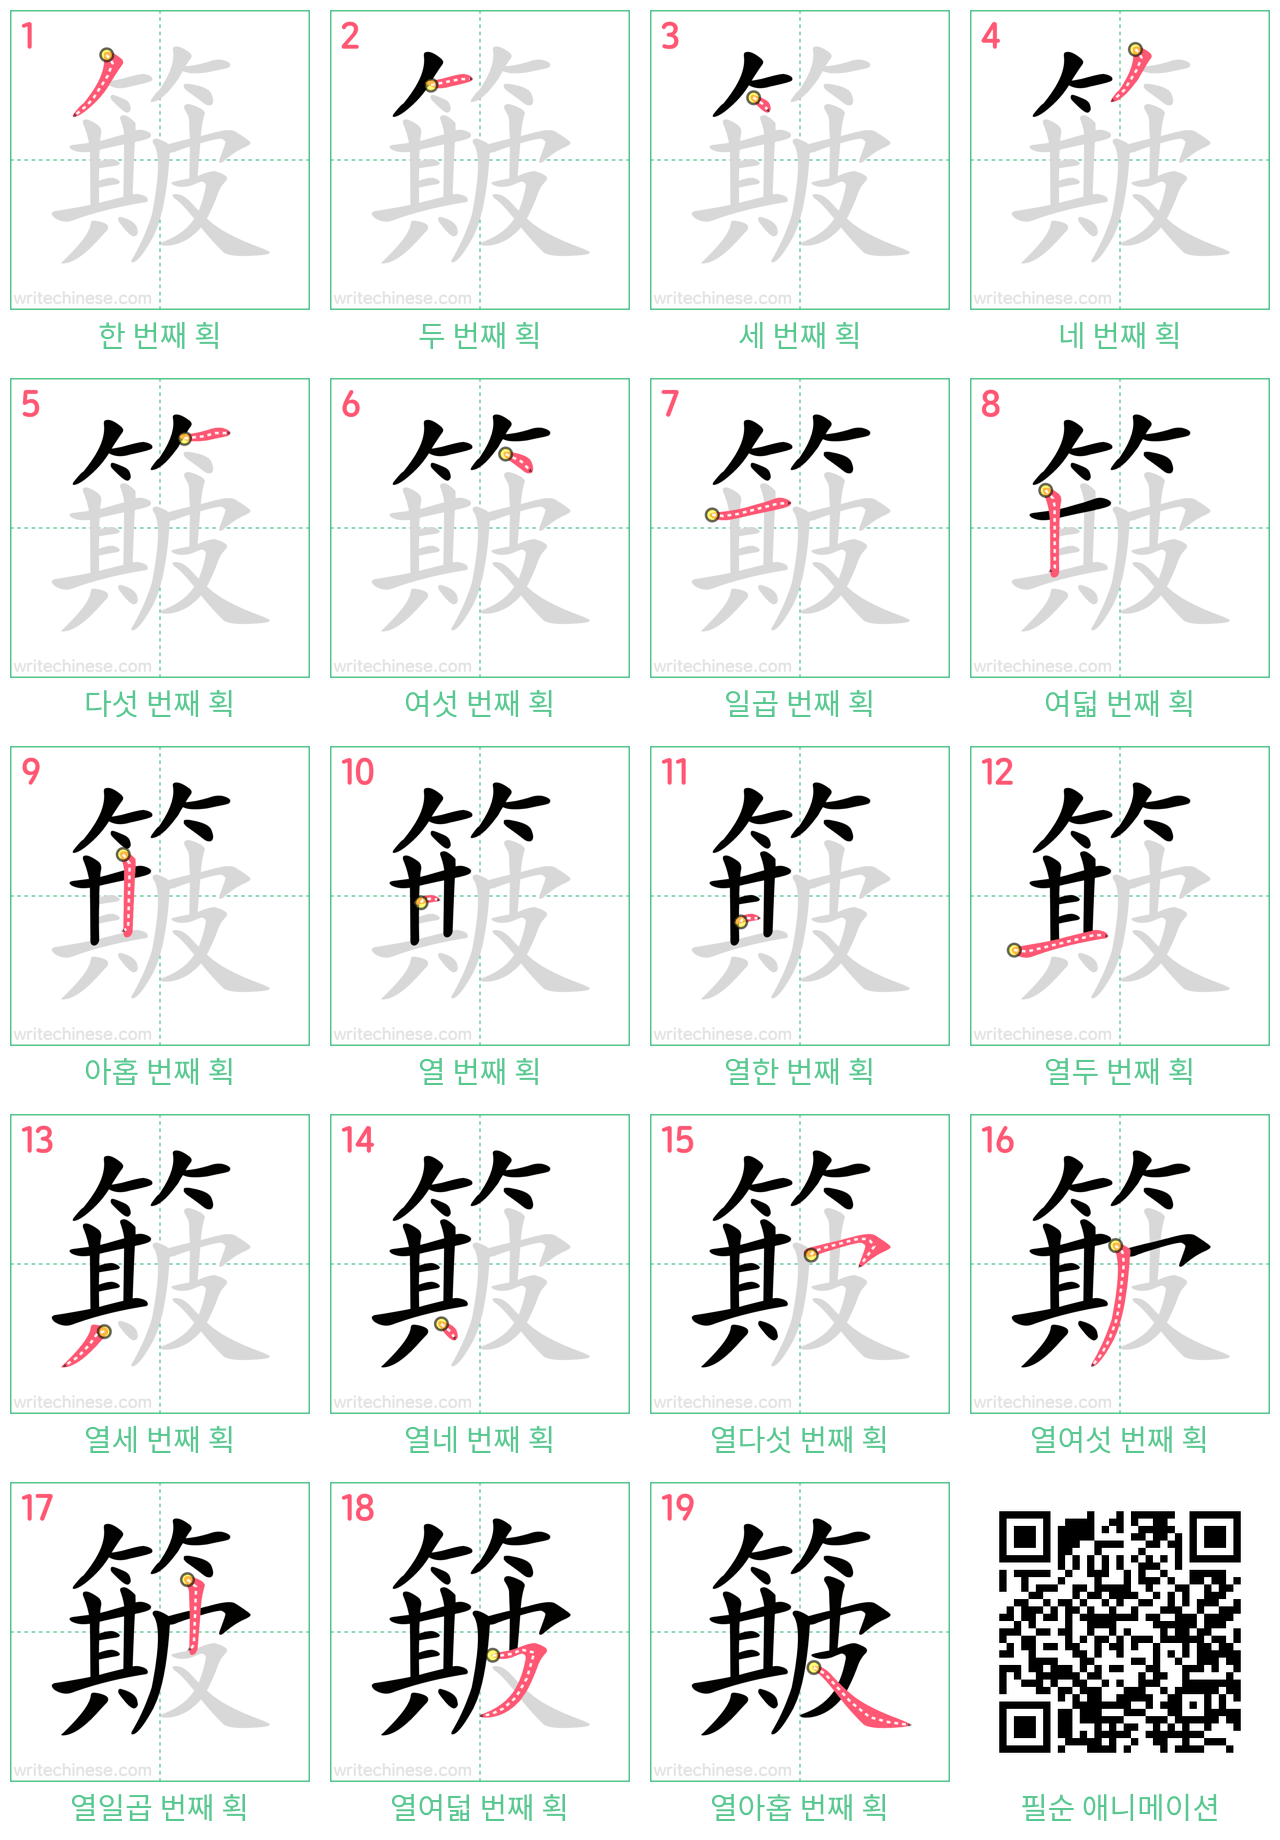 簸 step-by-step stroke order diagrams